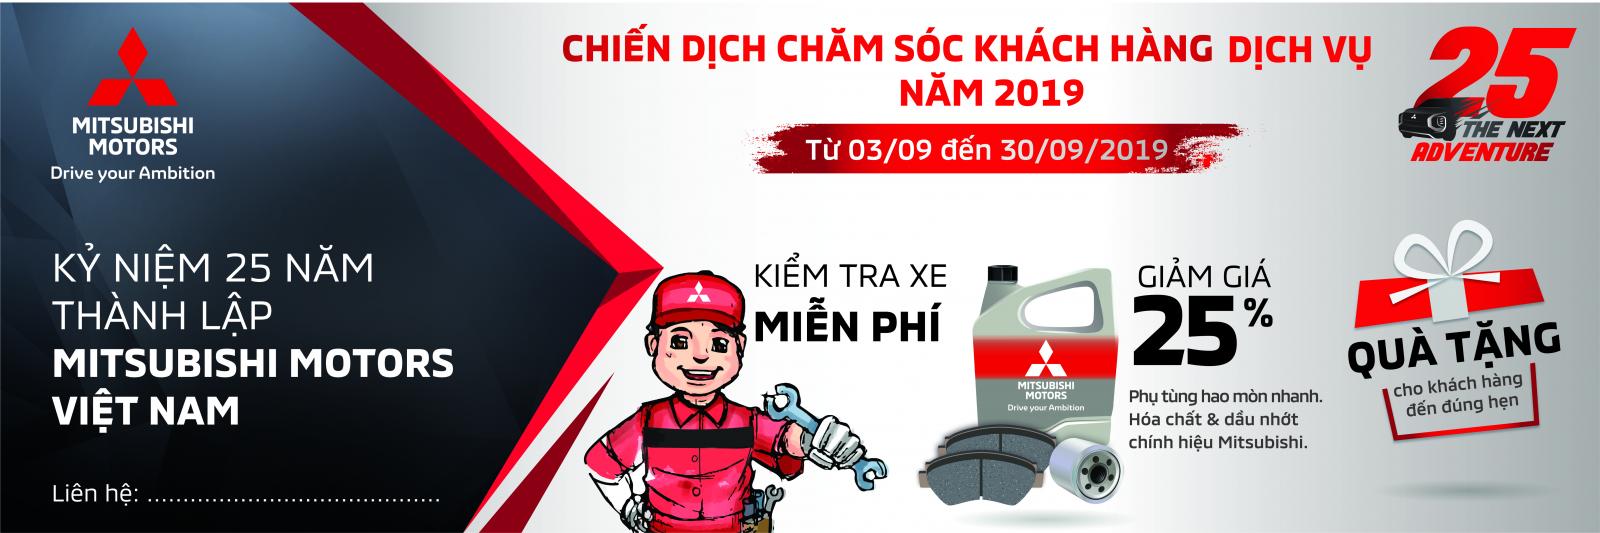 “Chiến dịch chăm sóc khách hàng” của Mitsubishi Việt Nam được thực hiện đến hết tháng 9/2019 1a